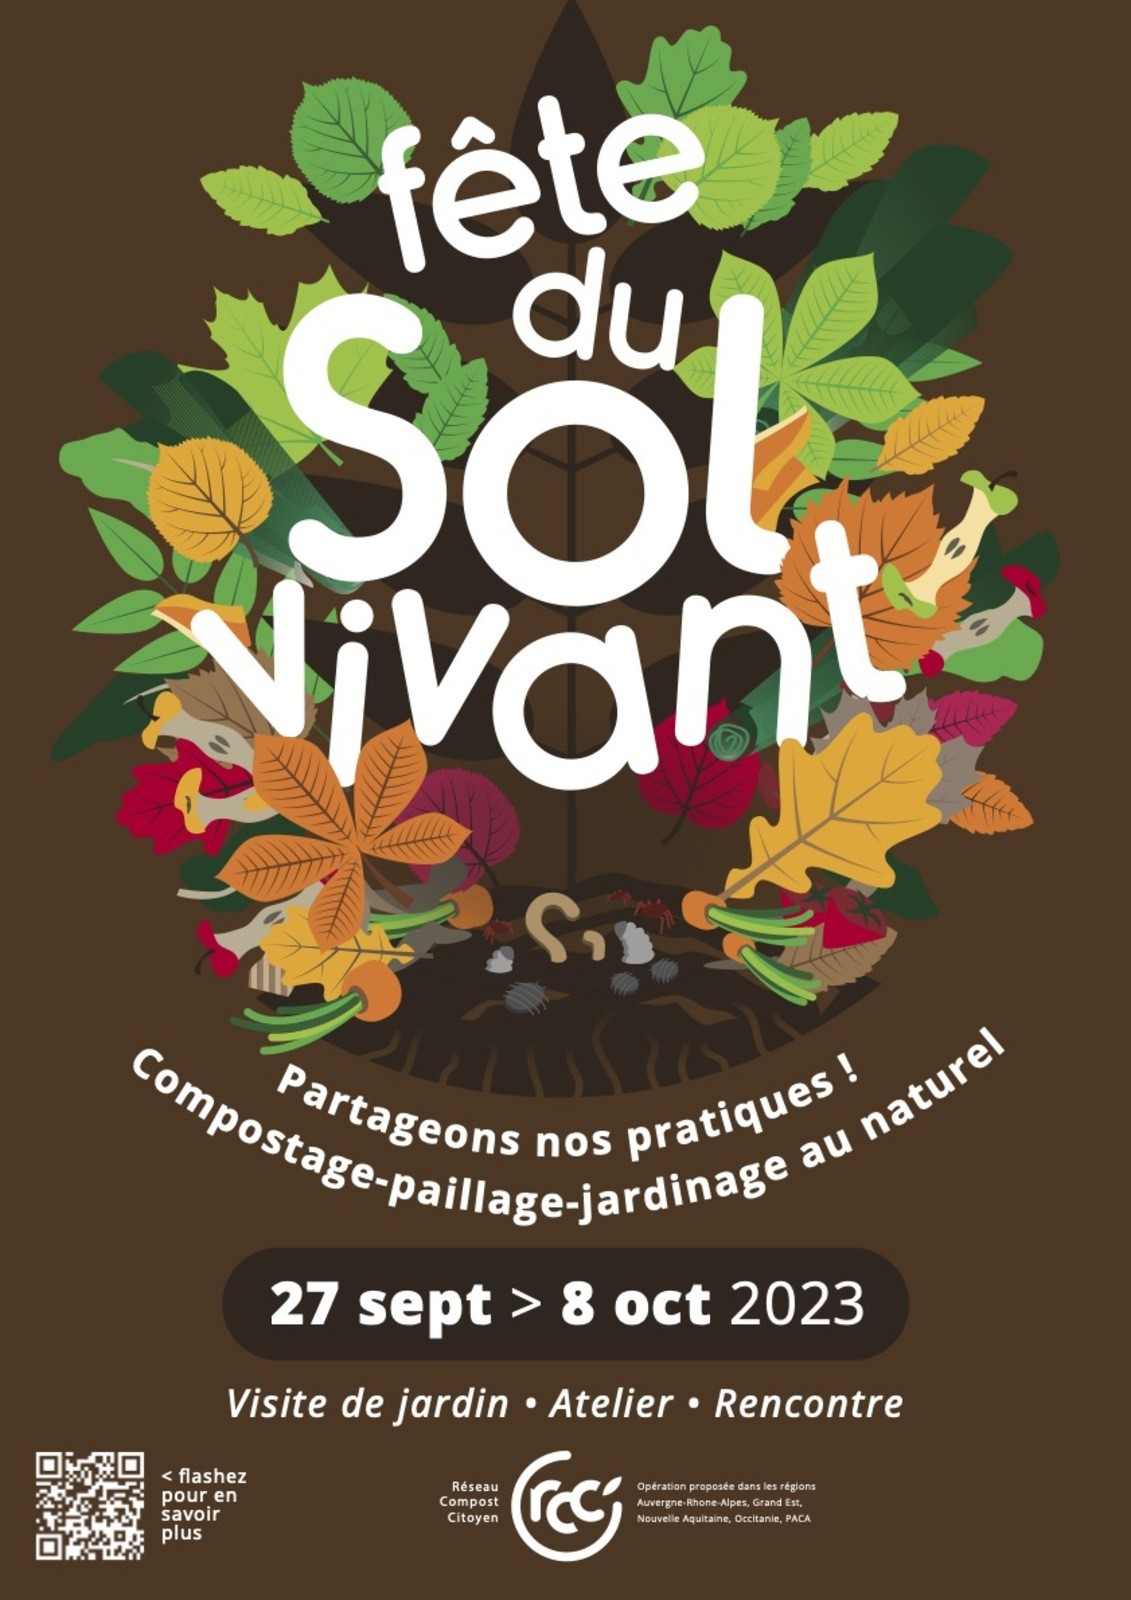 Fête du Sol Vivant en Occitanie - J'inscris mon jardin à l'opération 